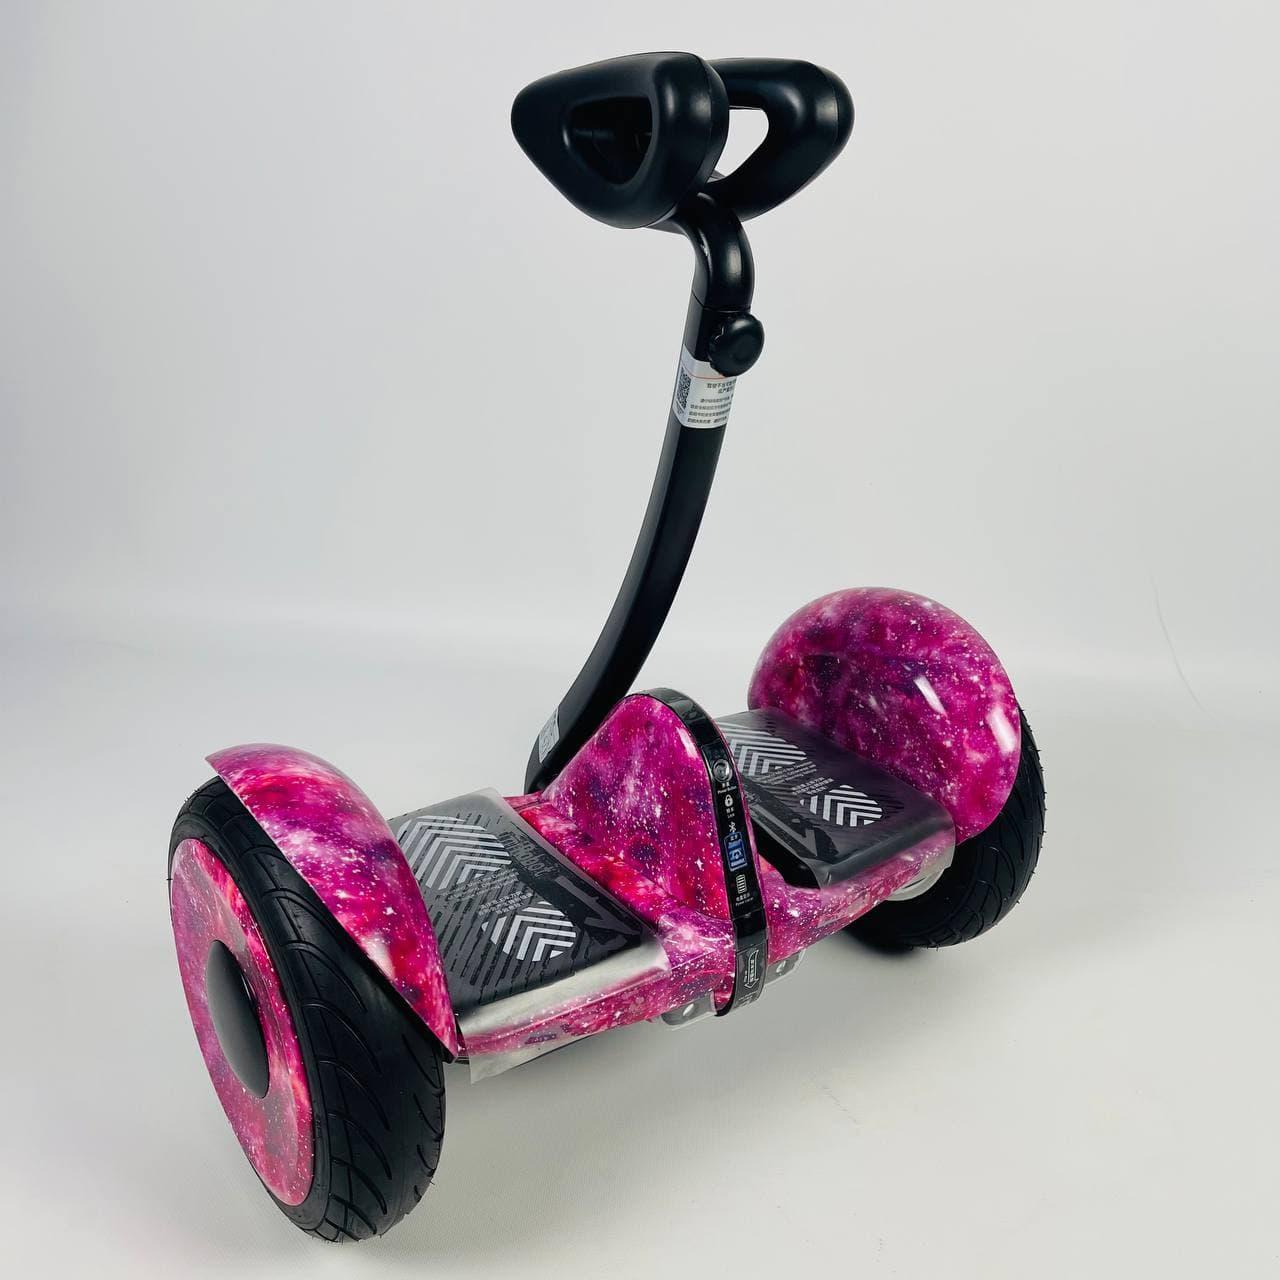 Сигвей Ninebot Mini колеса 10.5 Bluetooth рожевий космос-найнбот міні